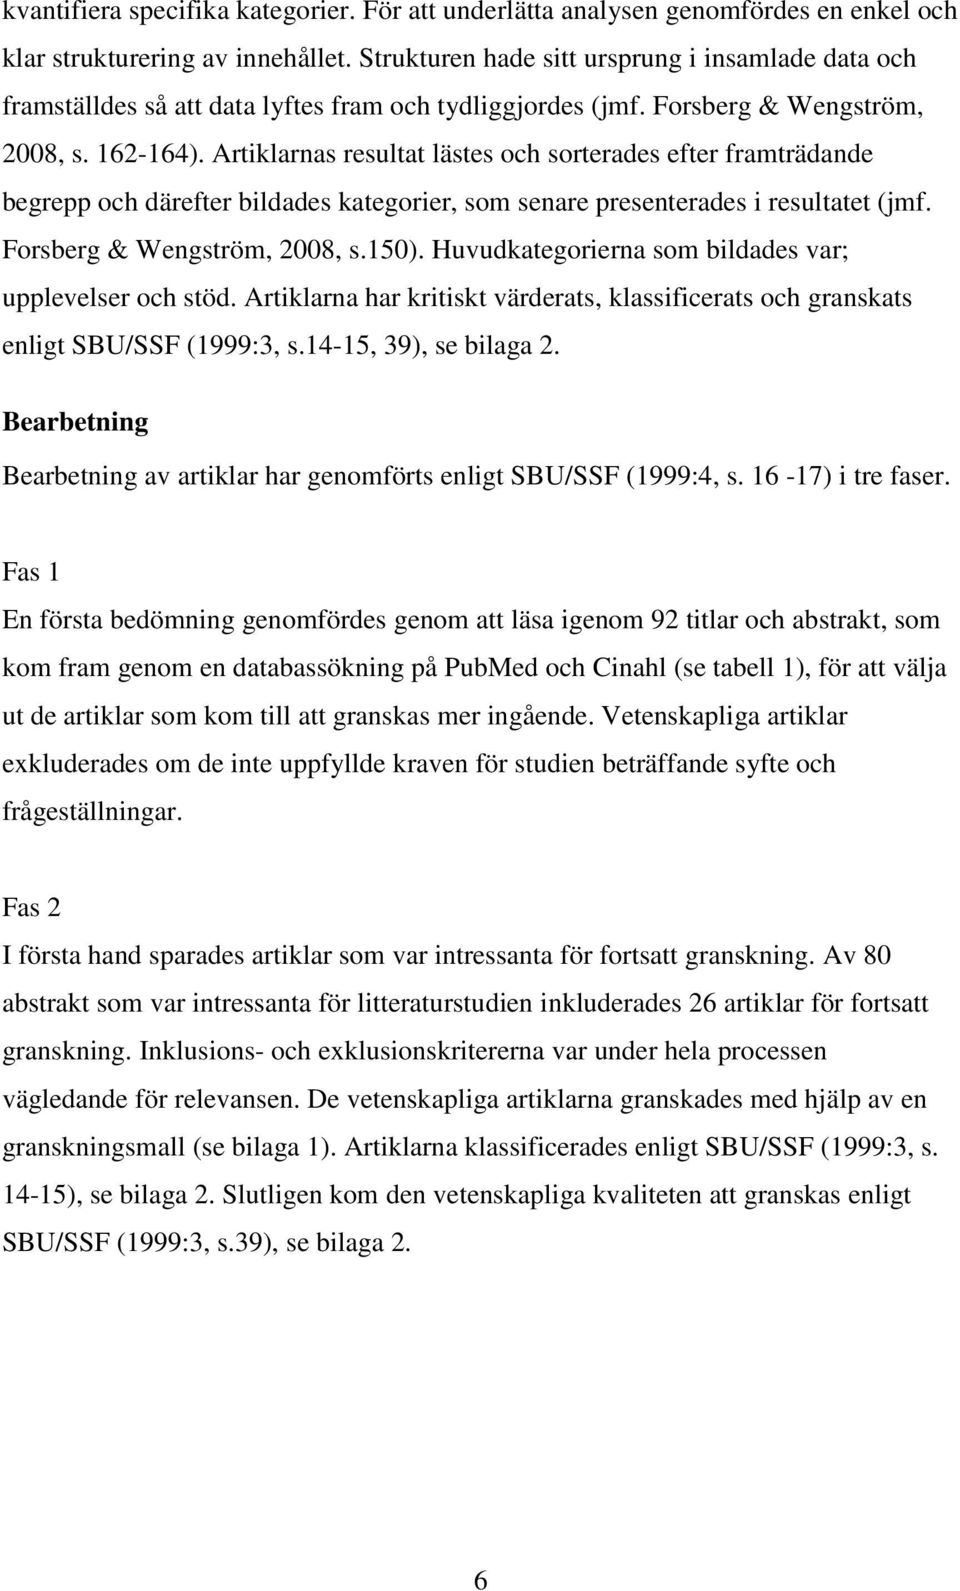 Artiklarnas resultat lästes och sorterades efter framträdande begrepp och därefter bildades kategorier, som senare presenterades i resultatet (jmf. Forsberg & Wengström, 2008, s.150).